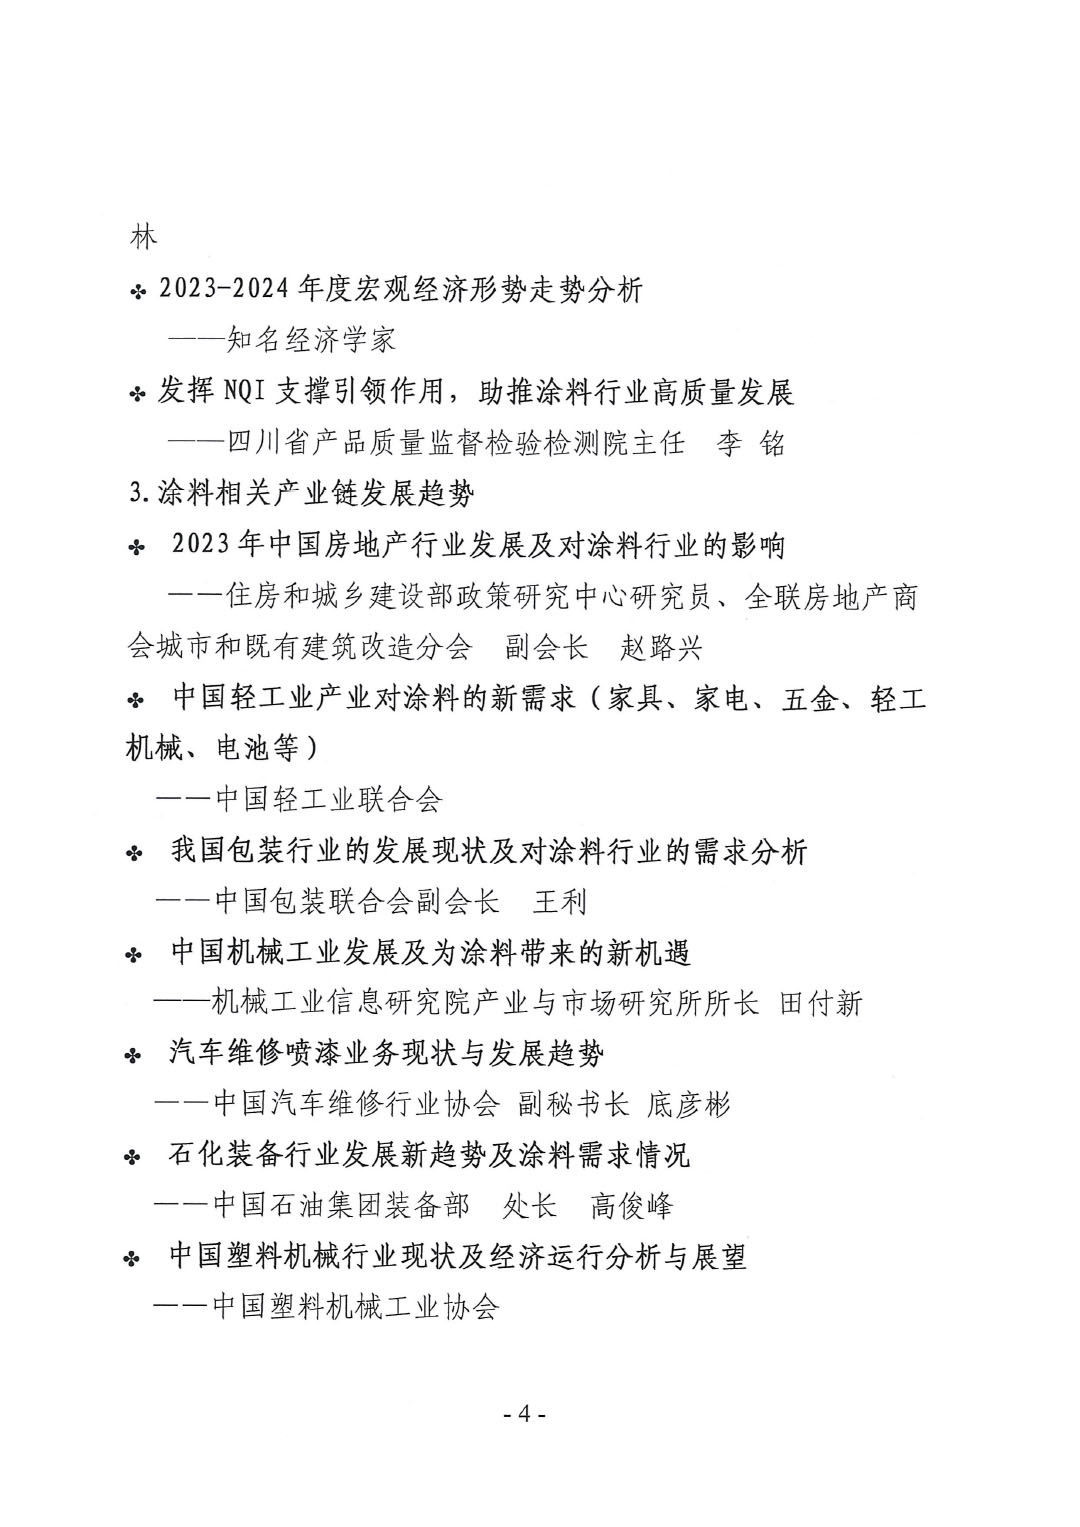 2023年中國涂料工業信息年會通知（明光）1017-4